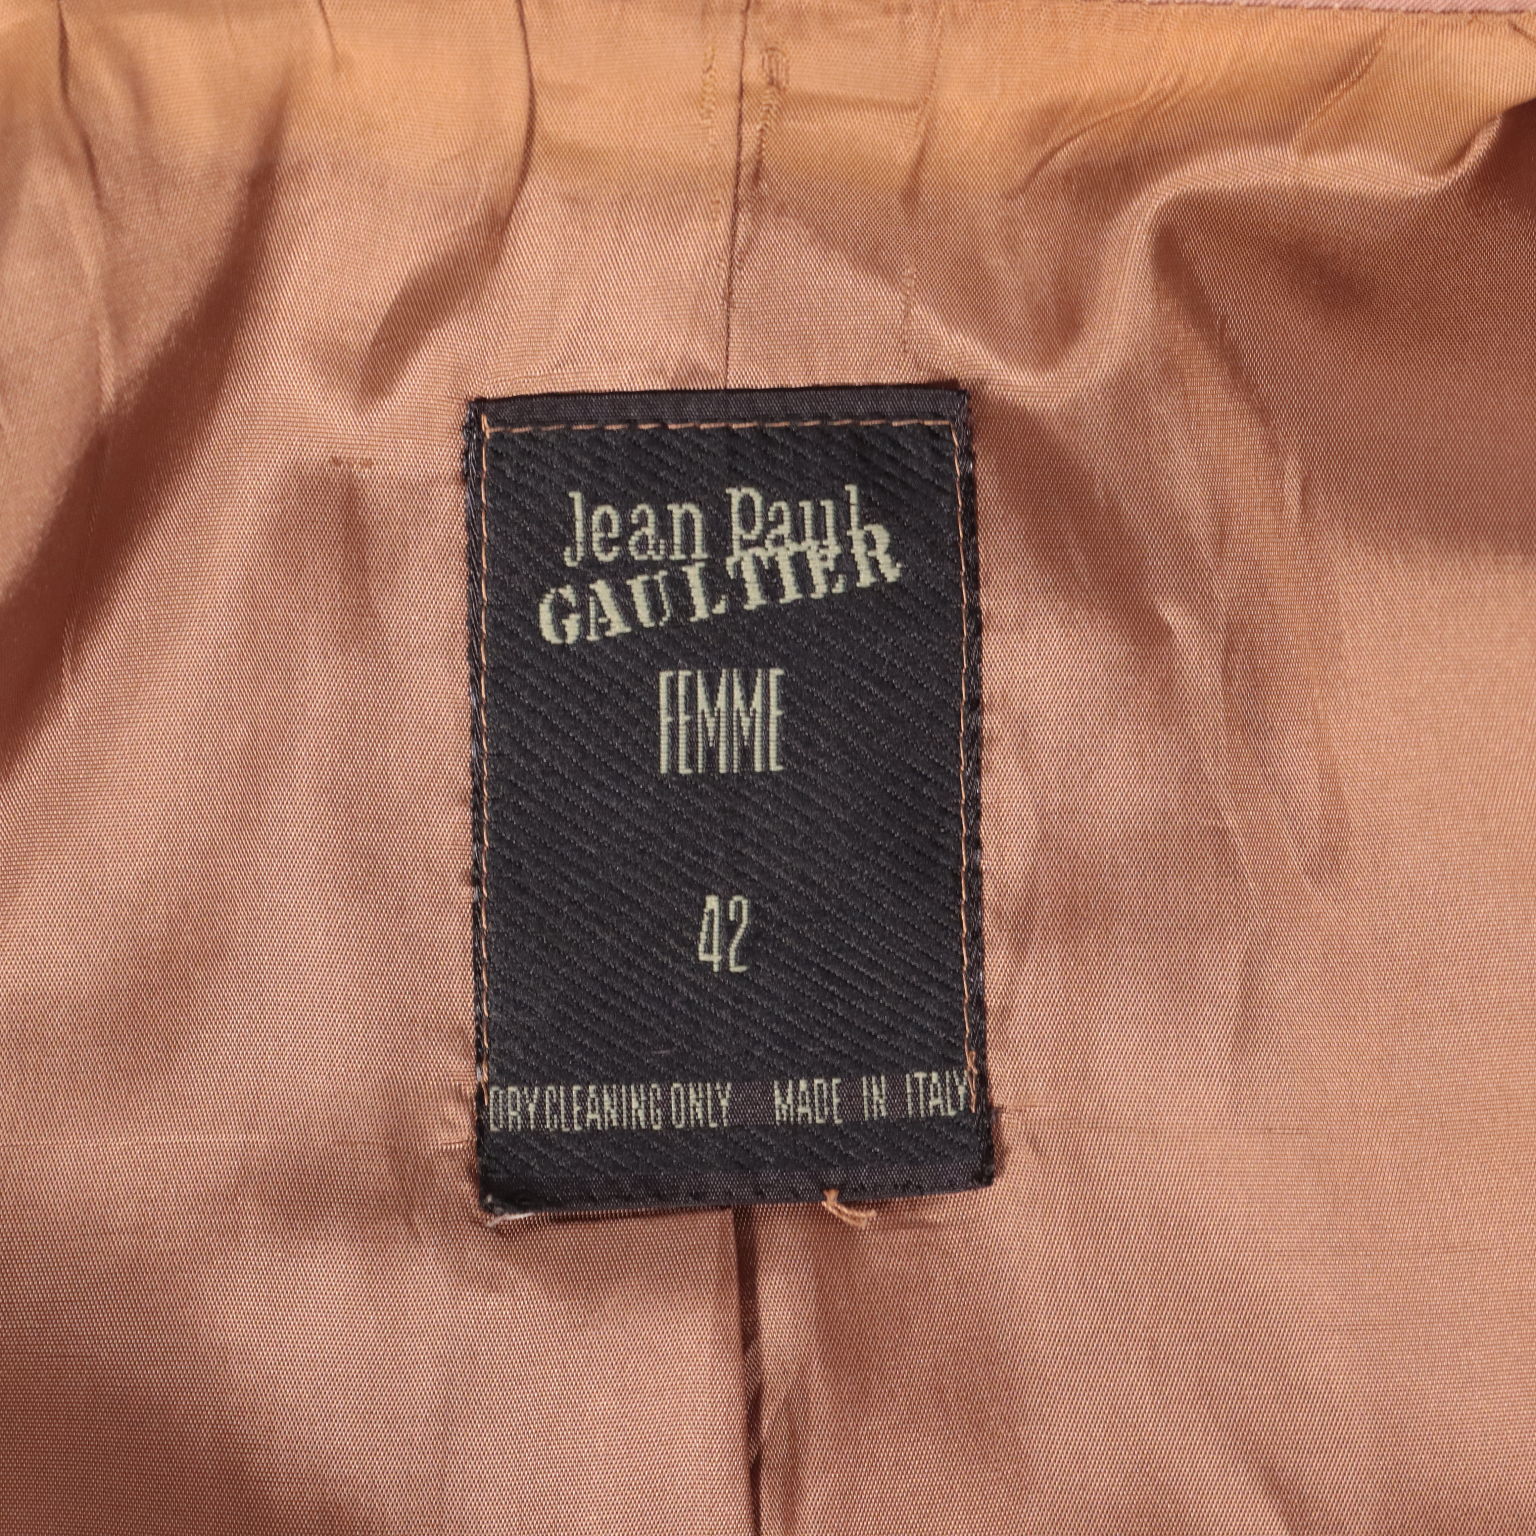 Jean Paul Gaultier Vintage Jacket, Clothing, Vintage, dimanoinmano. It